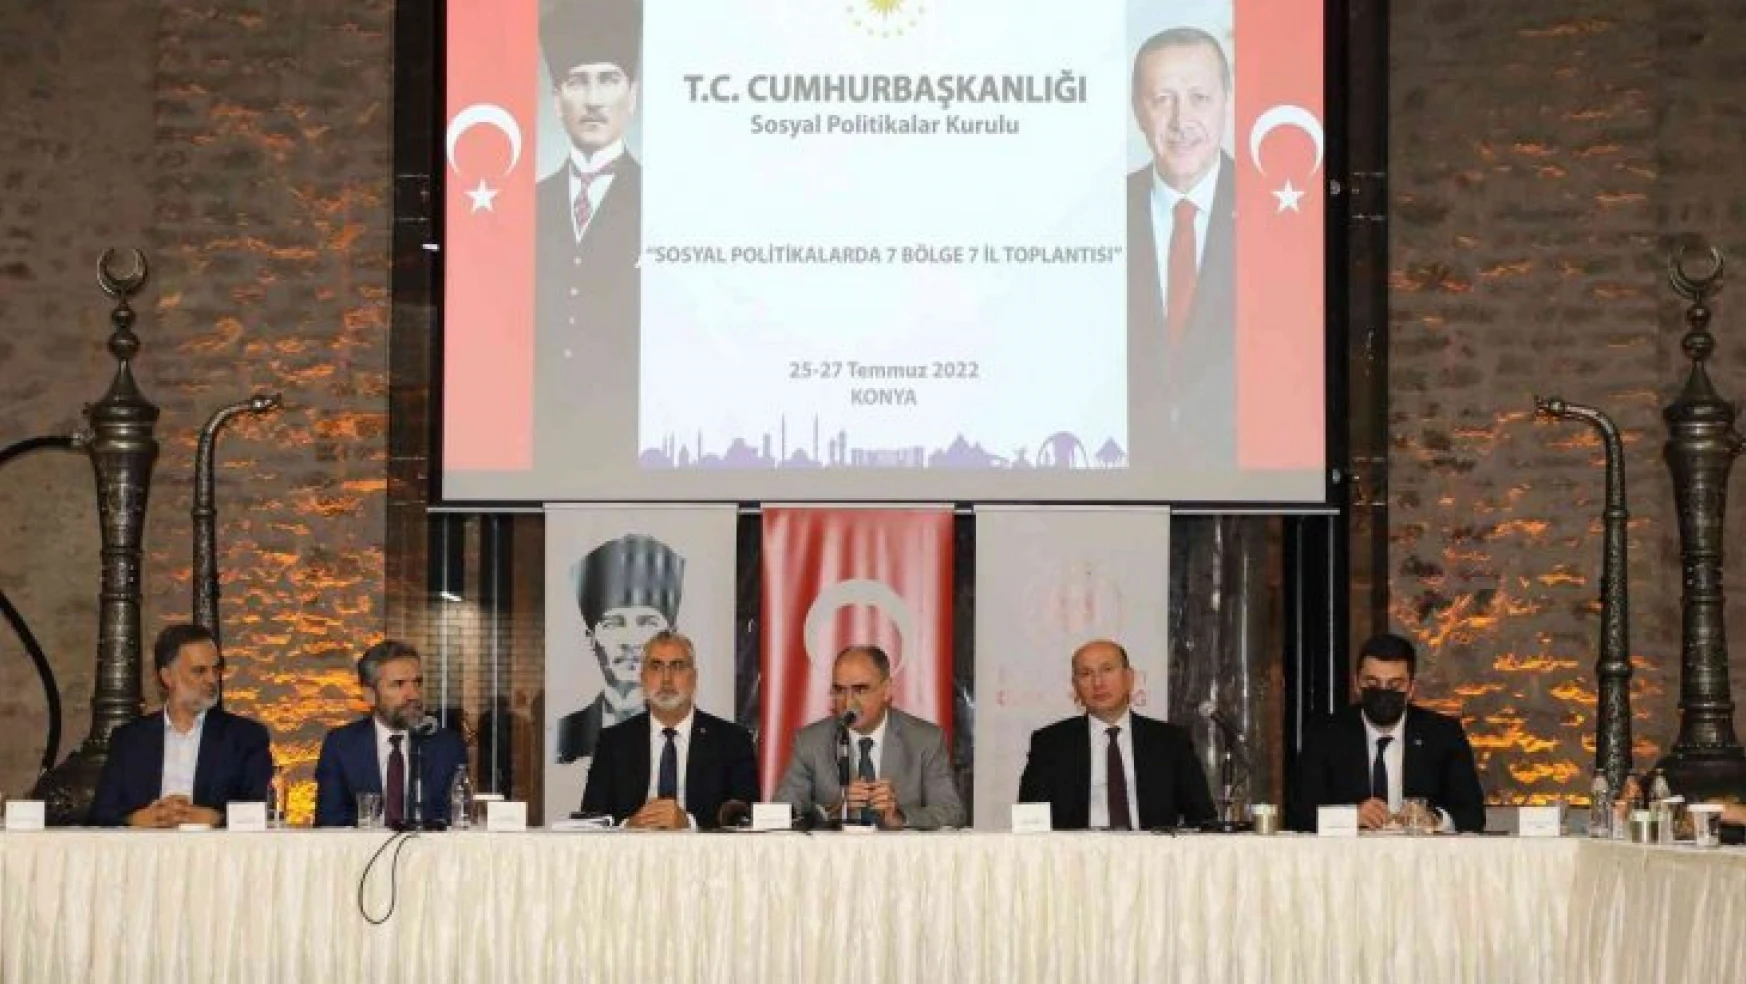 Konya'da 'Sosyal Politikalarda 7 Bölge 7 İl Projesi' toplantısı yapıldı